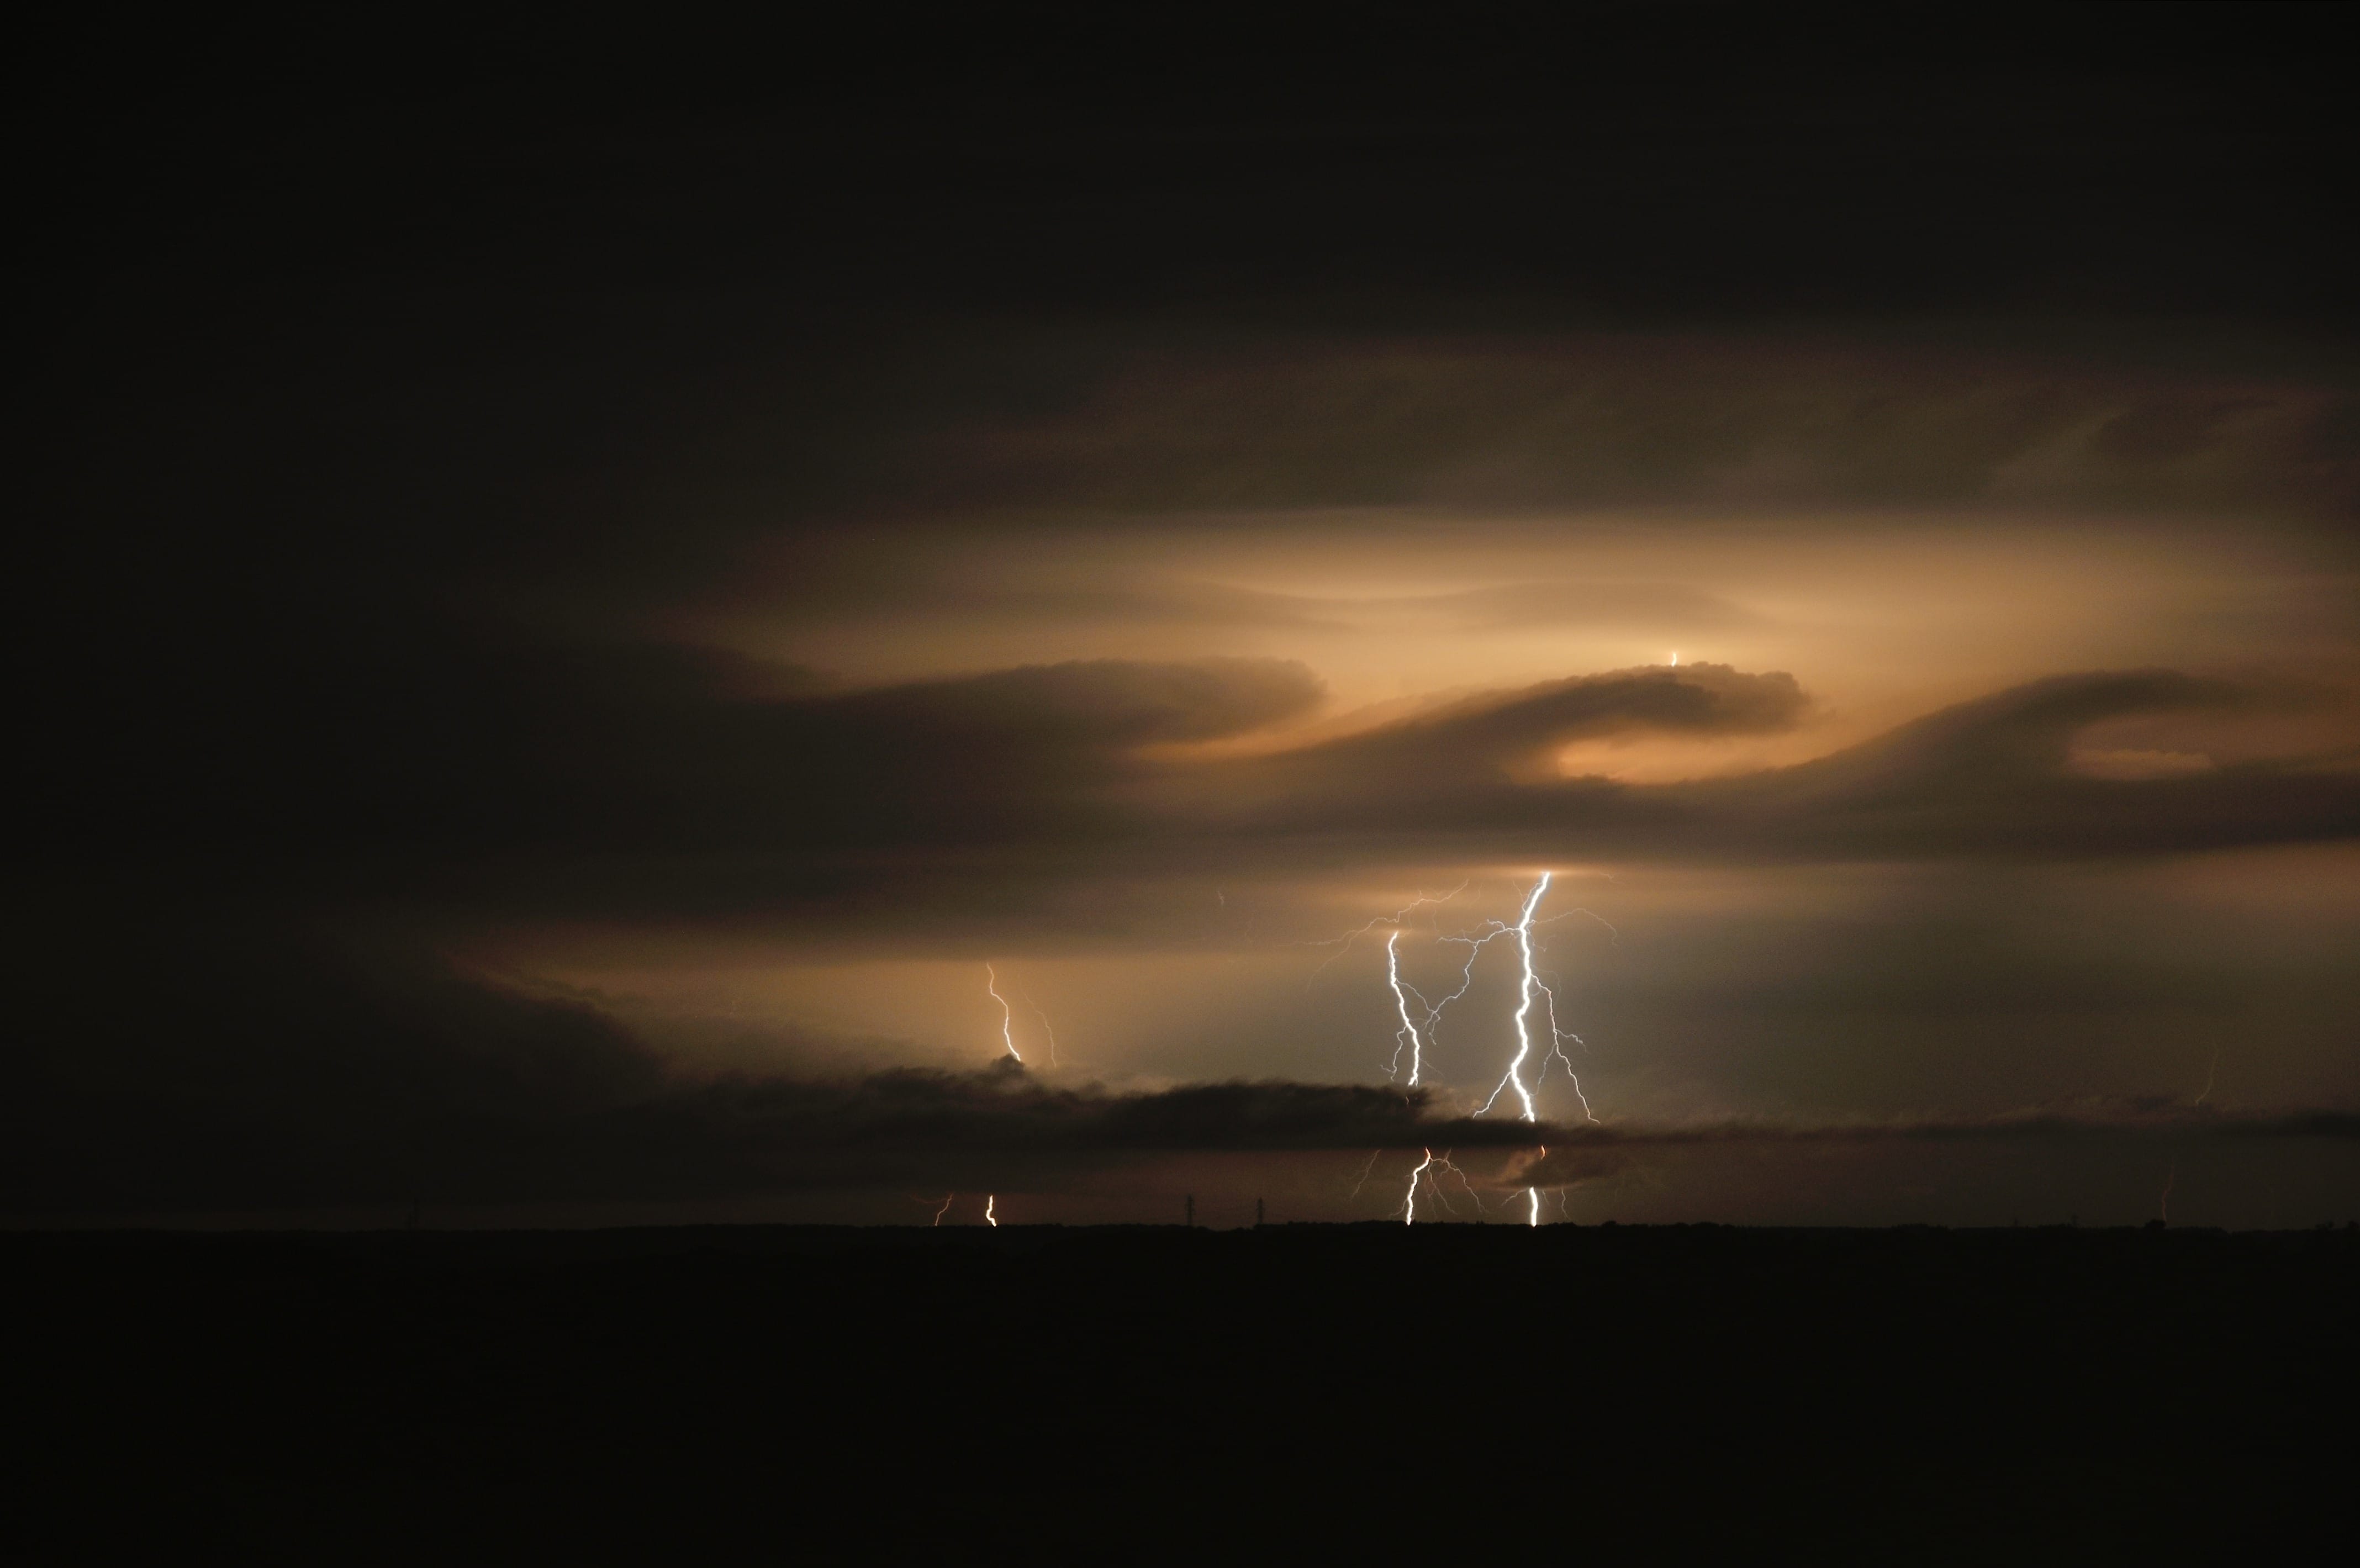 Instabilité de Kelvin-Helmholtz à l'avant d'un orage certainement supercellulaire se dirigeant vers Chaumont. La photo a été prise depuis Langres. - 01/08/2017 00:00 - Lucien Mandrillon